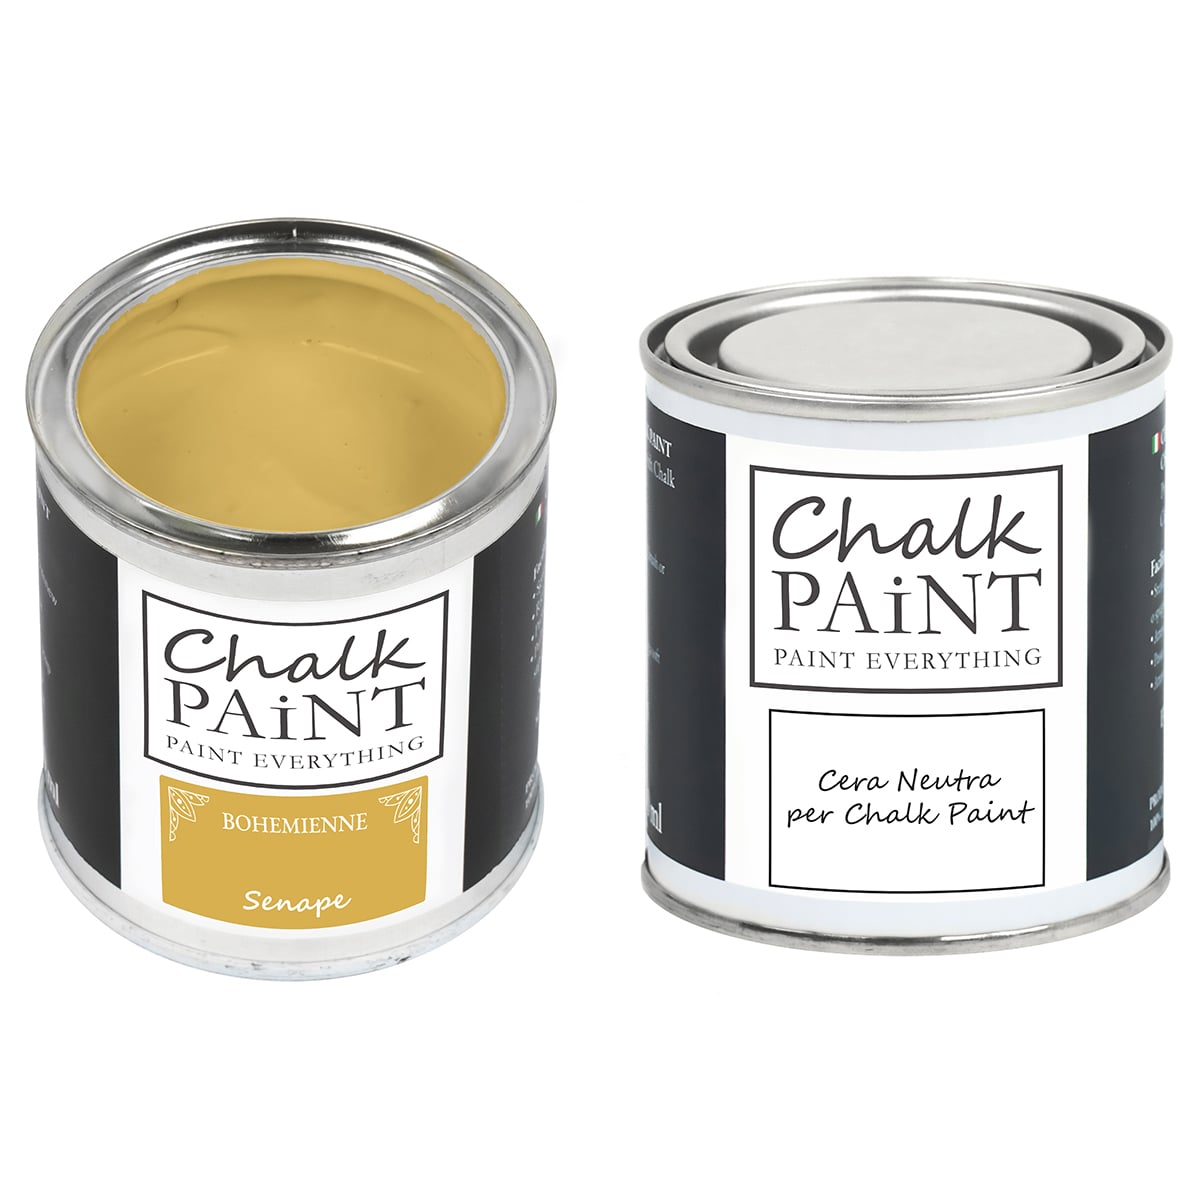 Senape Chalk paint e cera in offerta decora facile con paint magic